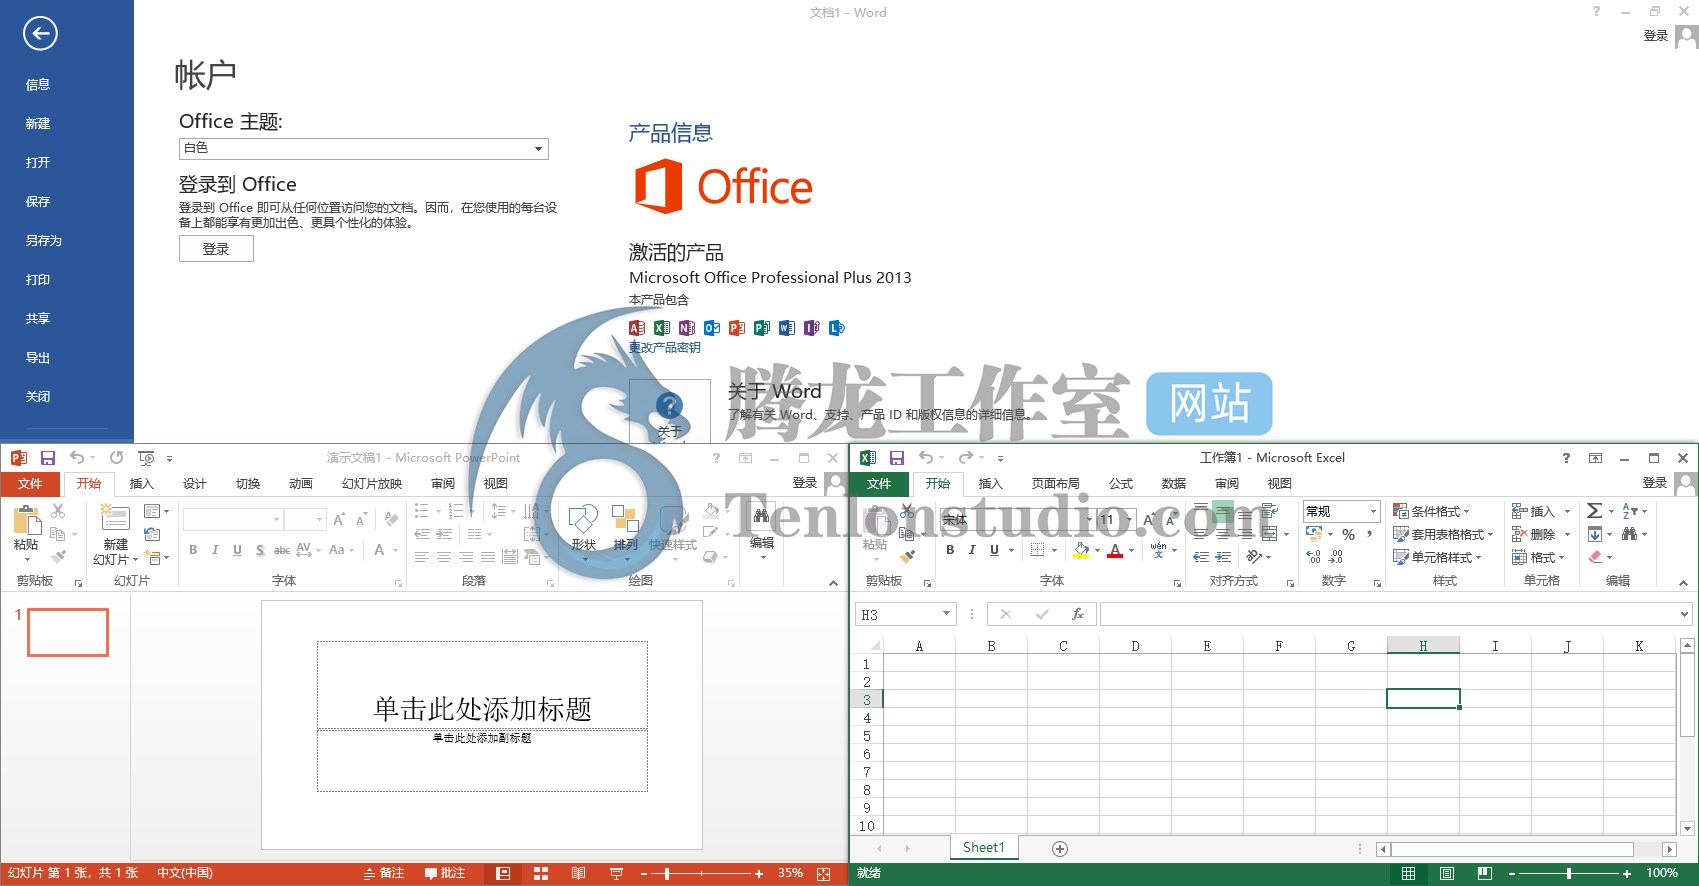 Microsoft Office Professional Plus 2013 SP1 专业增强版官方原版ISO安装镜像附激活方法